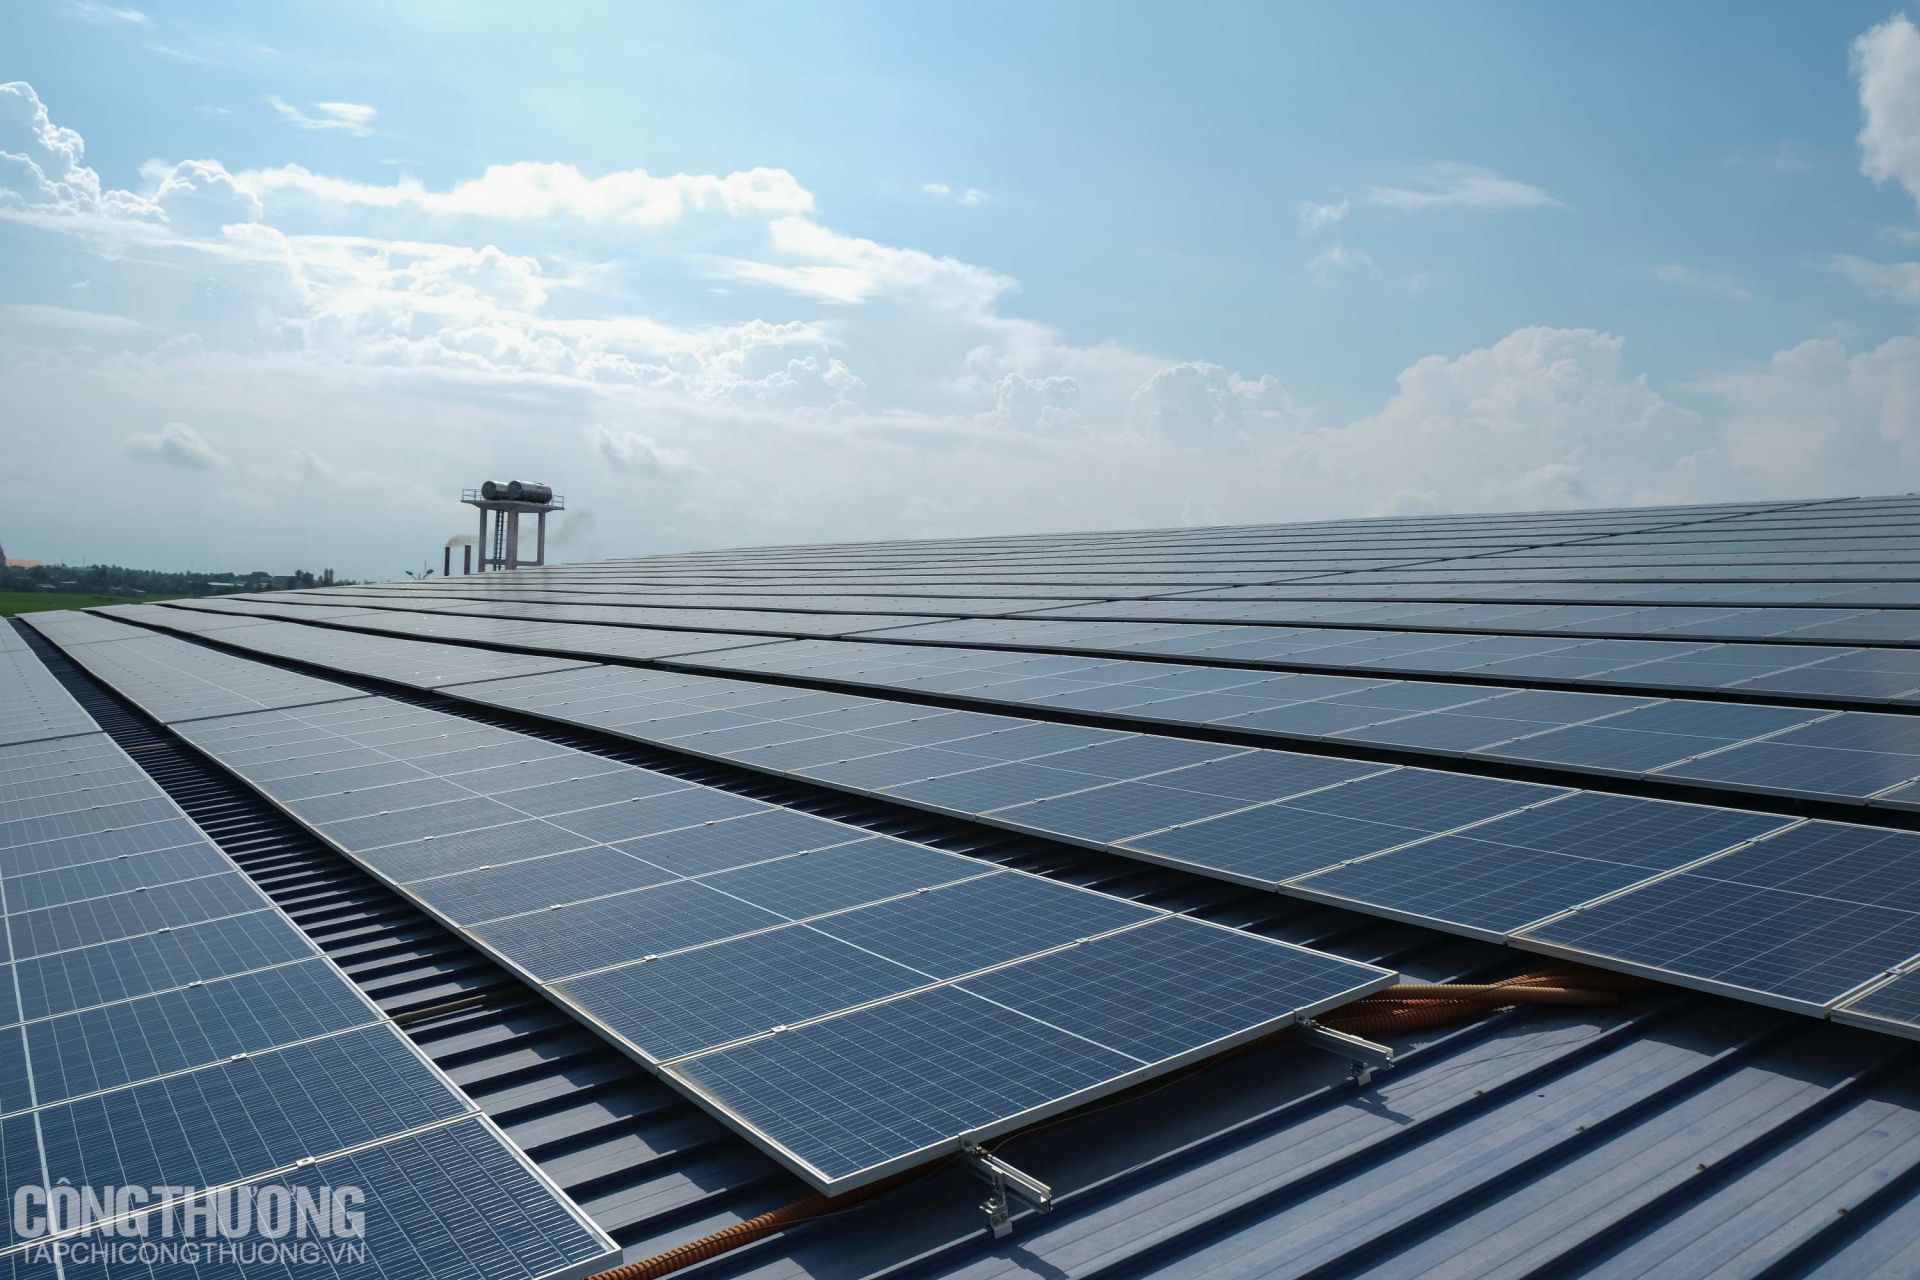 Dự án điện mặt trời mái nhà của doanh nghiệp chế biến thủy sản Thông Thuận, dù mới đi vào hoạt động 1 năm nhưng đã cho lợi ích ổn định về kinh tế khi cung cấp điện cho cả nhà máy và lượng điện dư bán lại cho ngành Điện